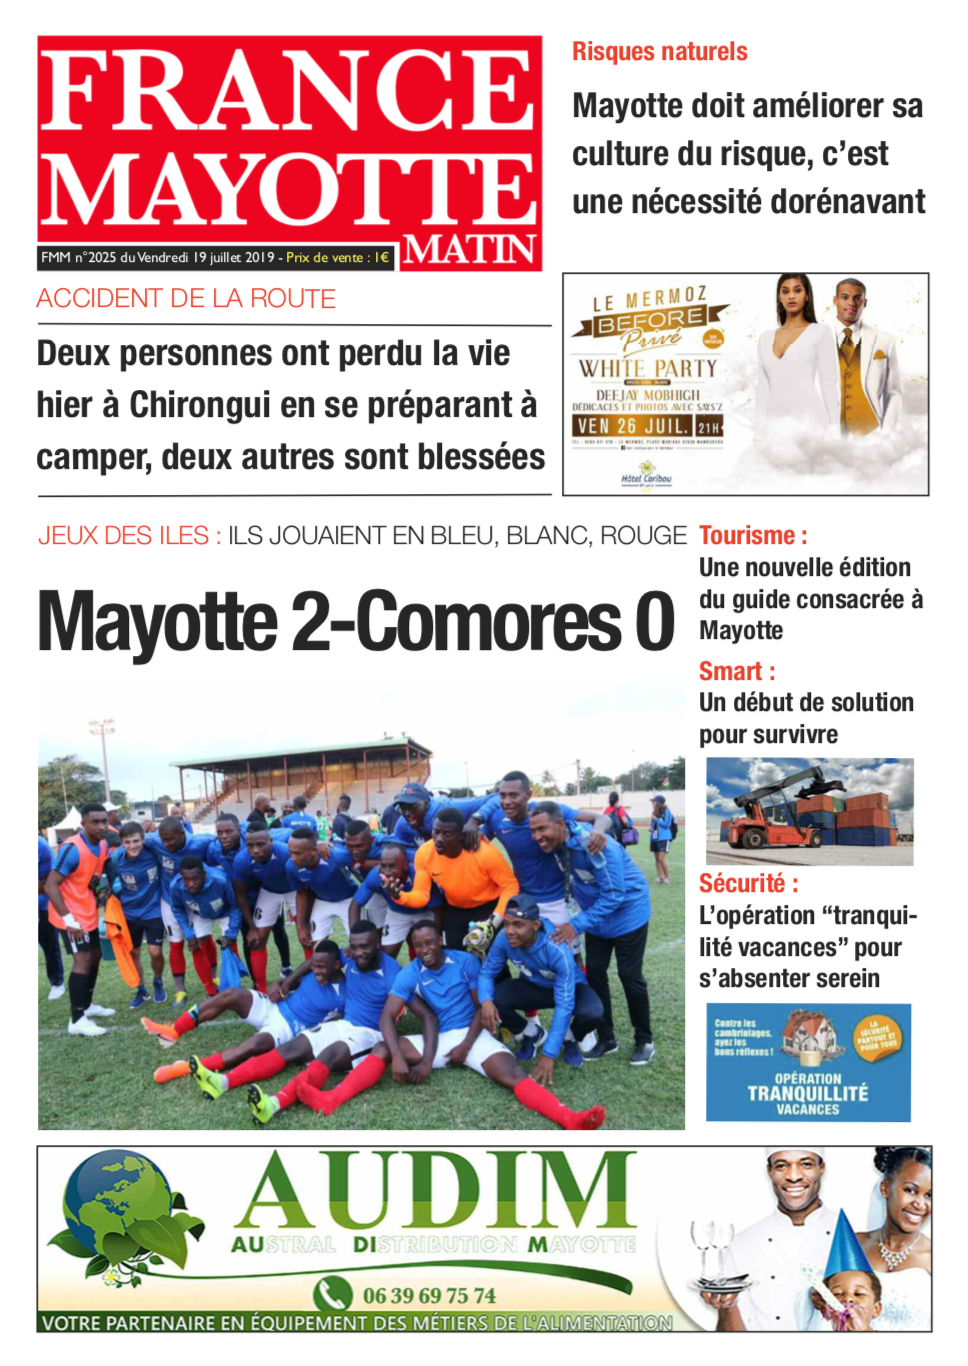 France Mayotte Vendredi 19 juillet 2019